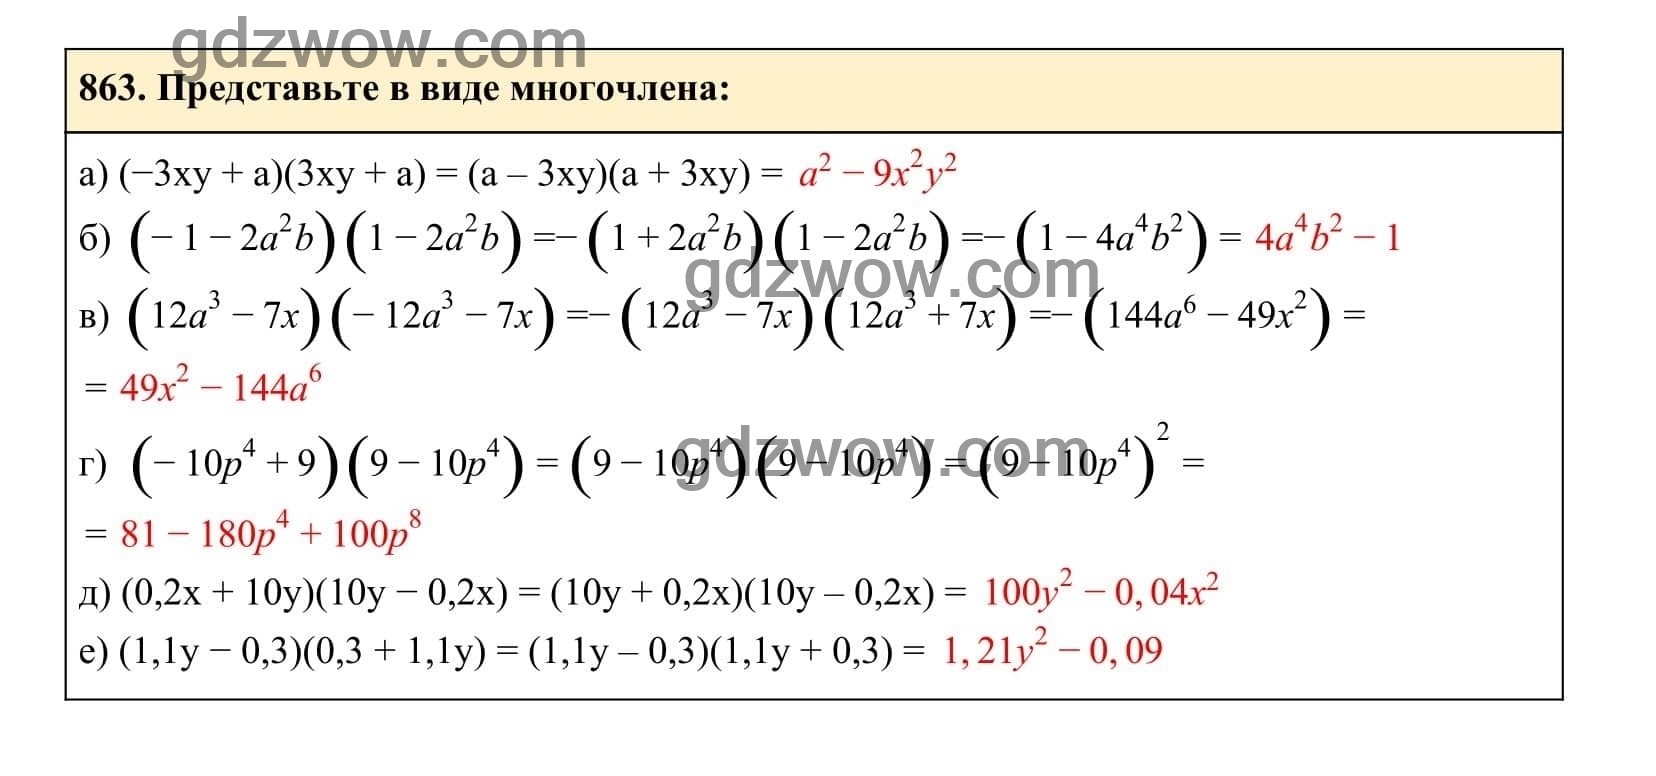 Упражнение 863 - ГДЗ по Алгебре 7 класс Учебник Макарычев (решебник) - GDZwow